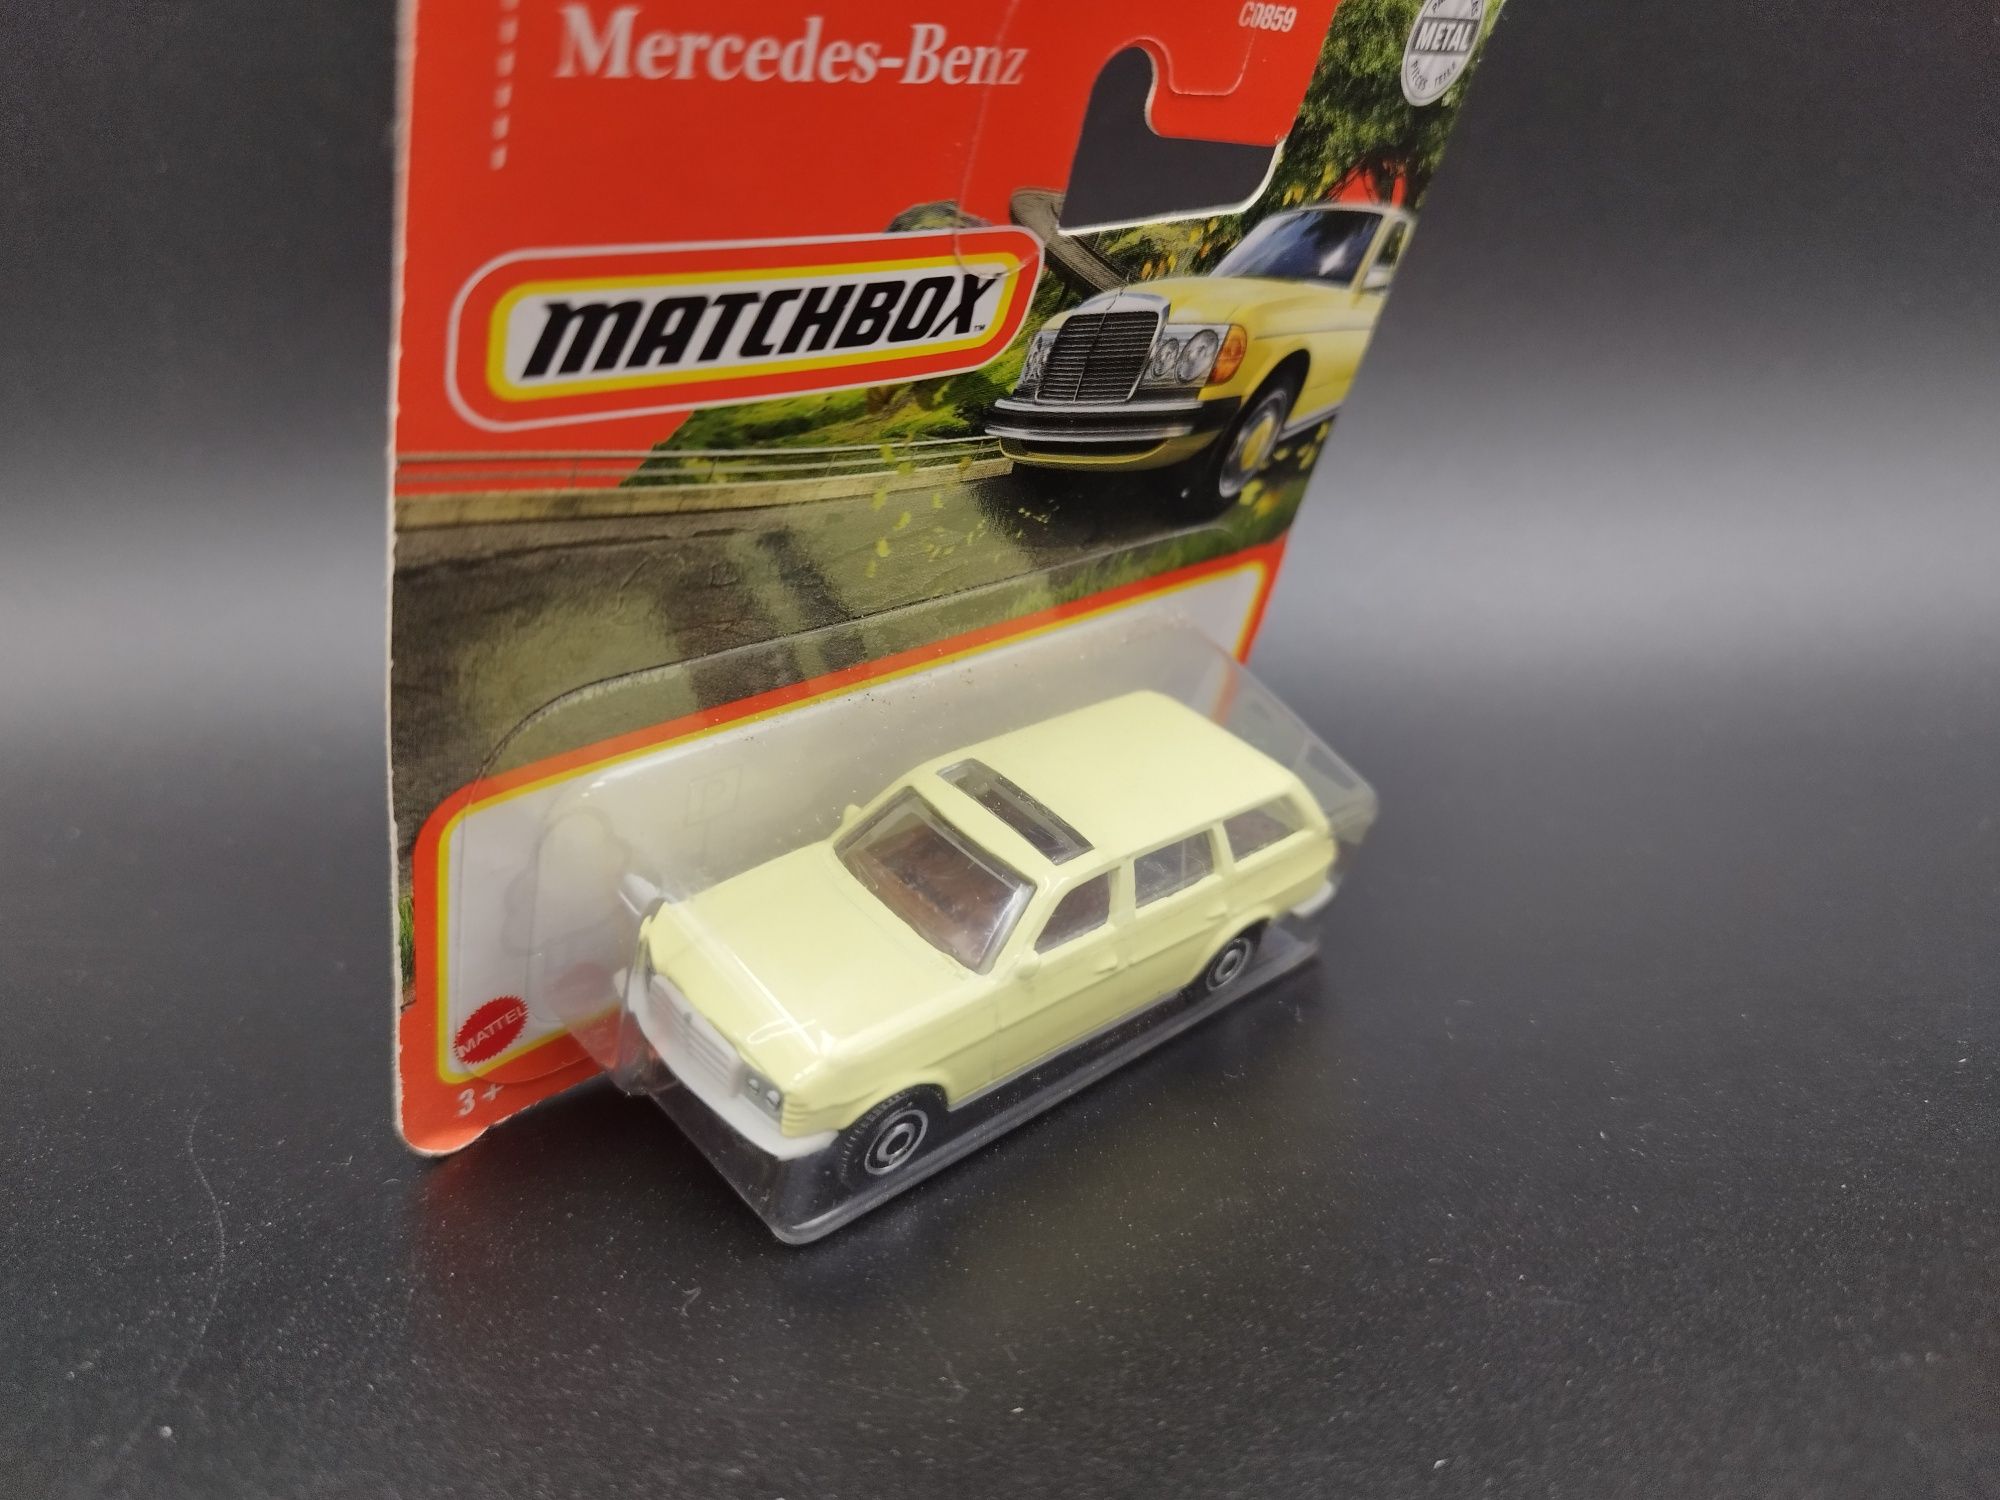 1:64 Matchbox 1980 Mercedes Benz S123 Station wagon